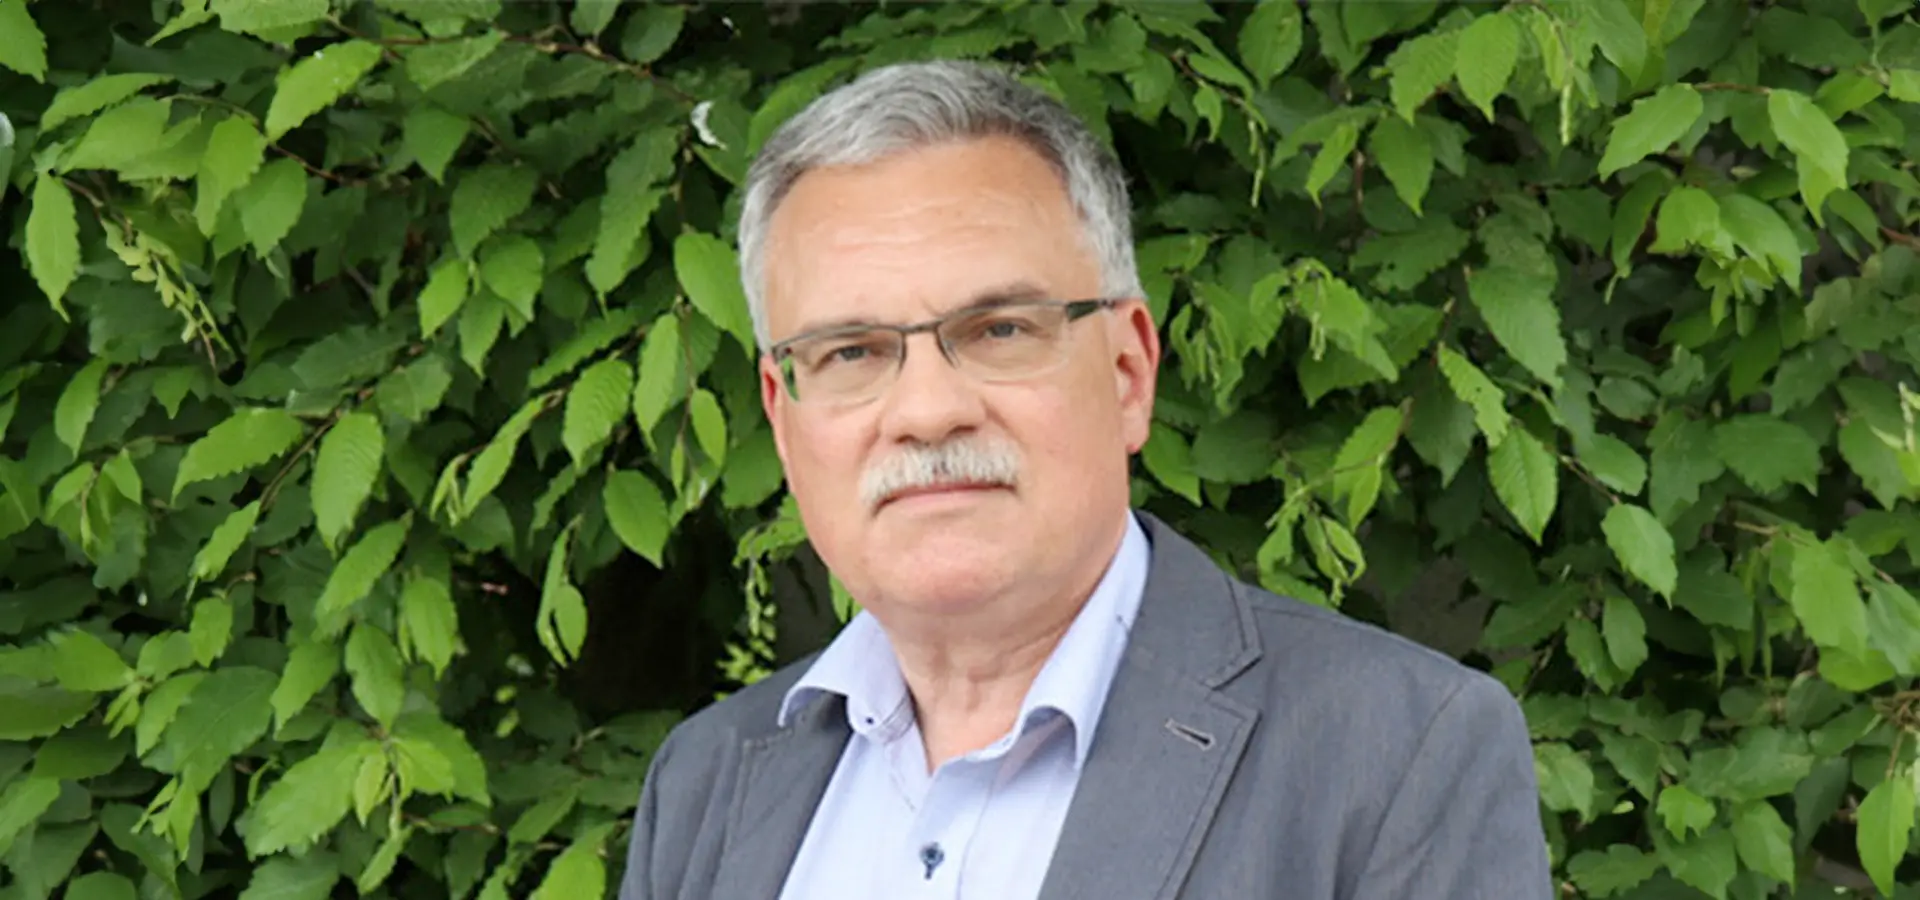 Uwe Jens Gerhard